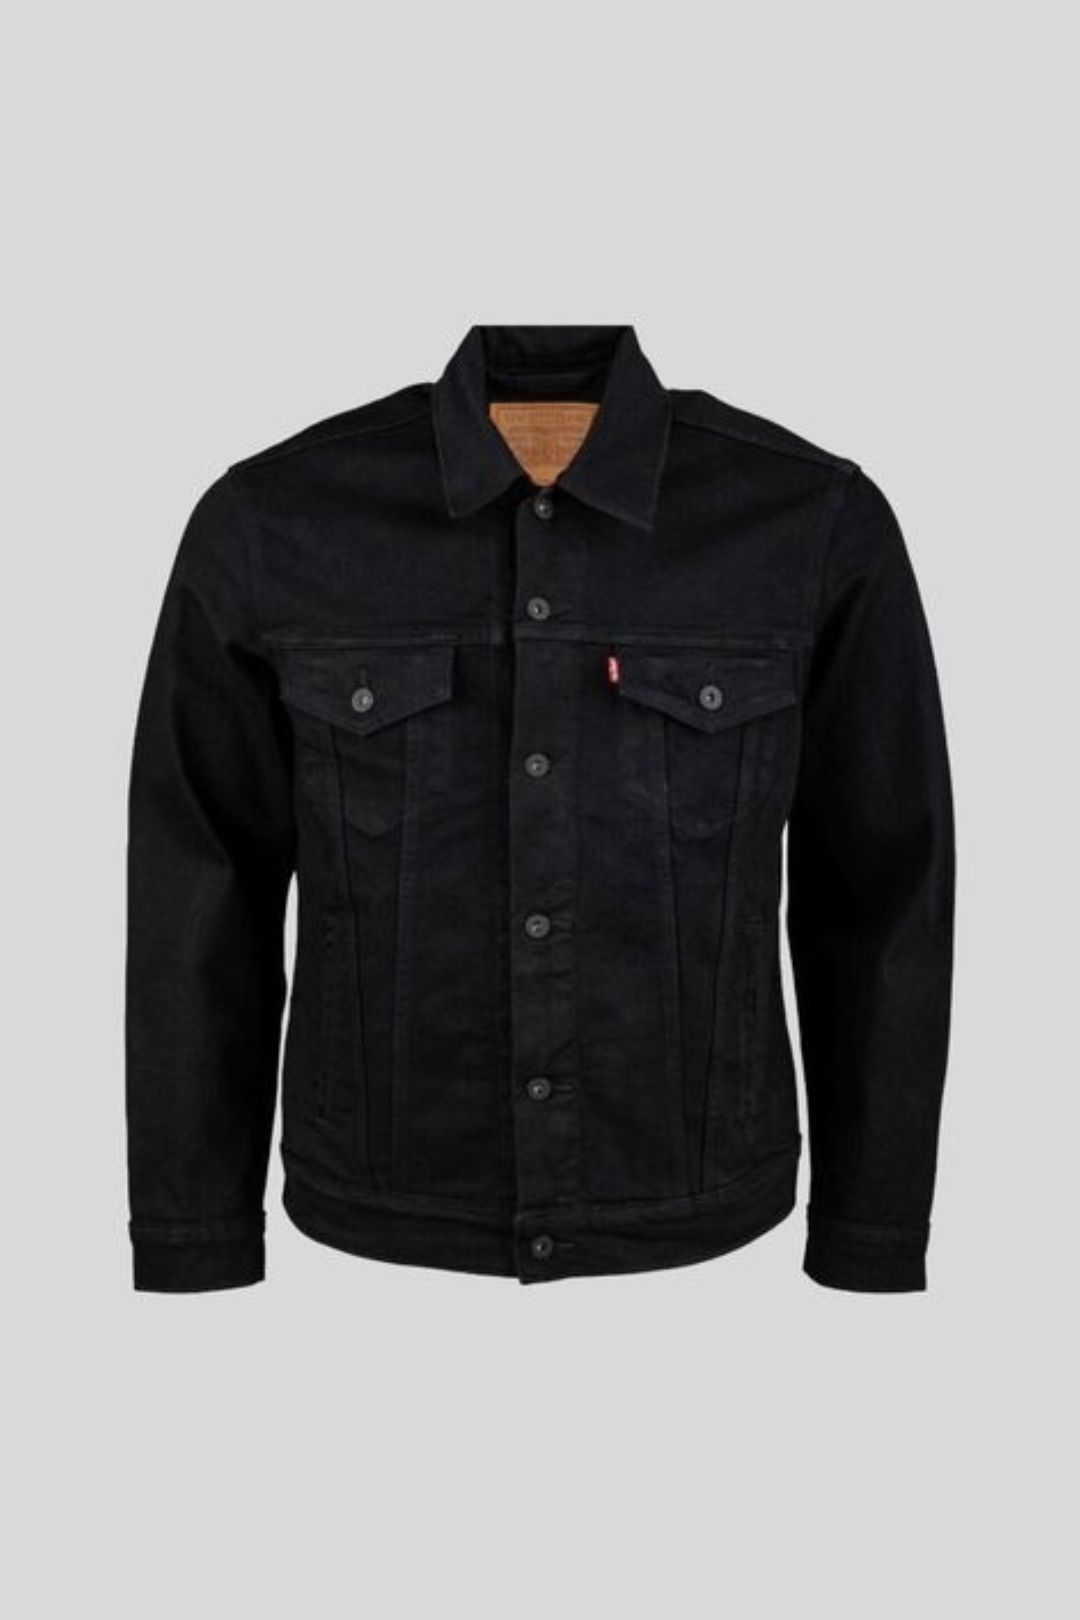 Levi's - Trucker Jacket in Black